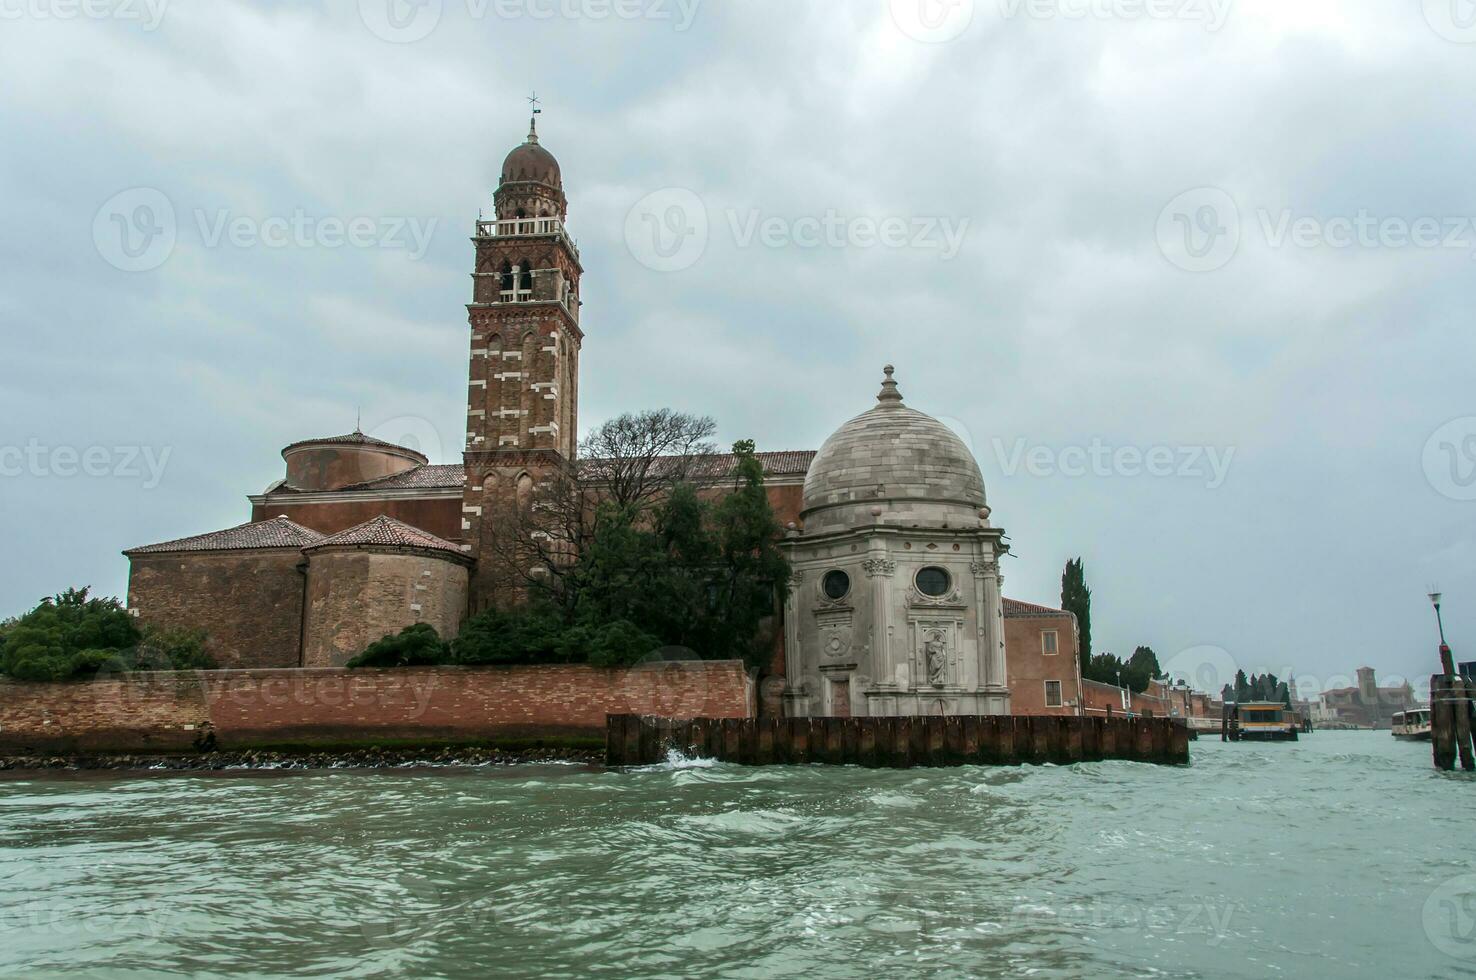 idyllisch landschap in Venetië, Italië foto